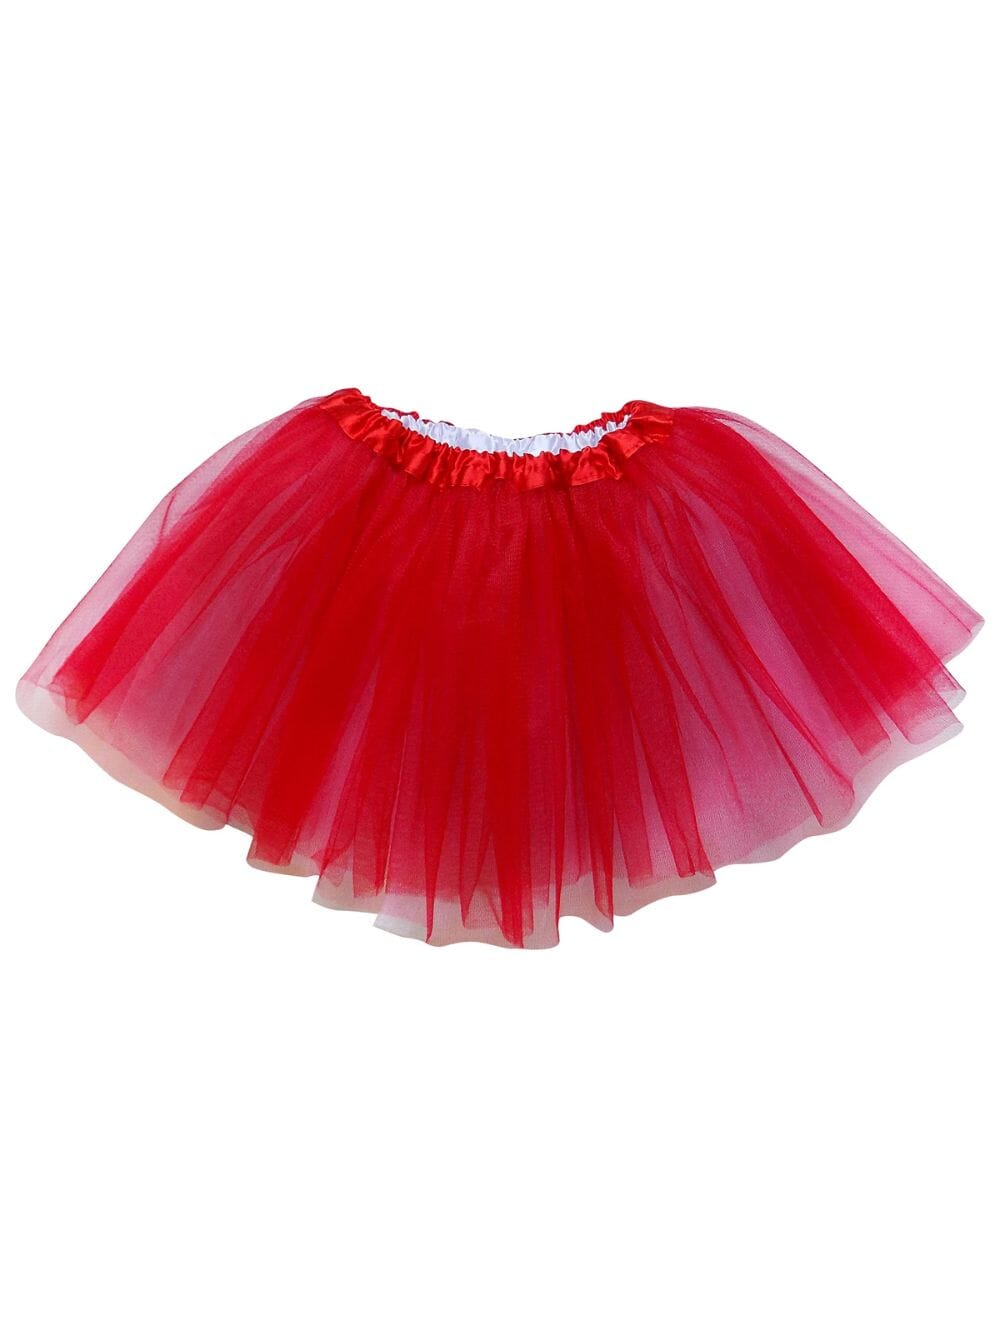 Reversible Red & White Tutu Skirt - Kids Size Tulle Basic Ballet Dance Costume Girls Tutus - Sydney So Sweet